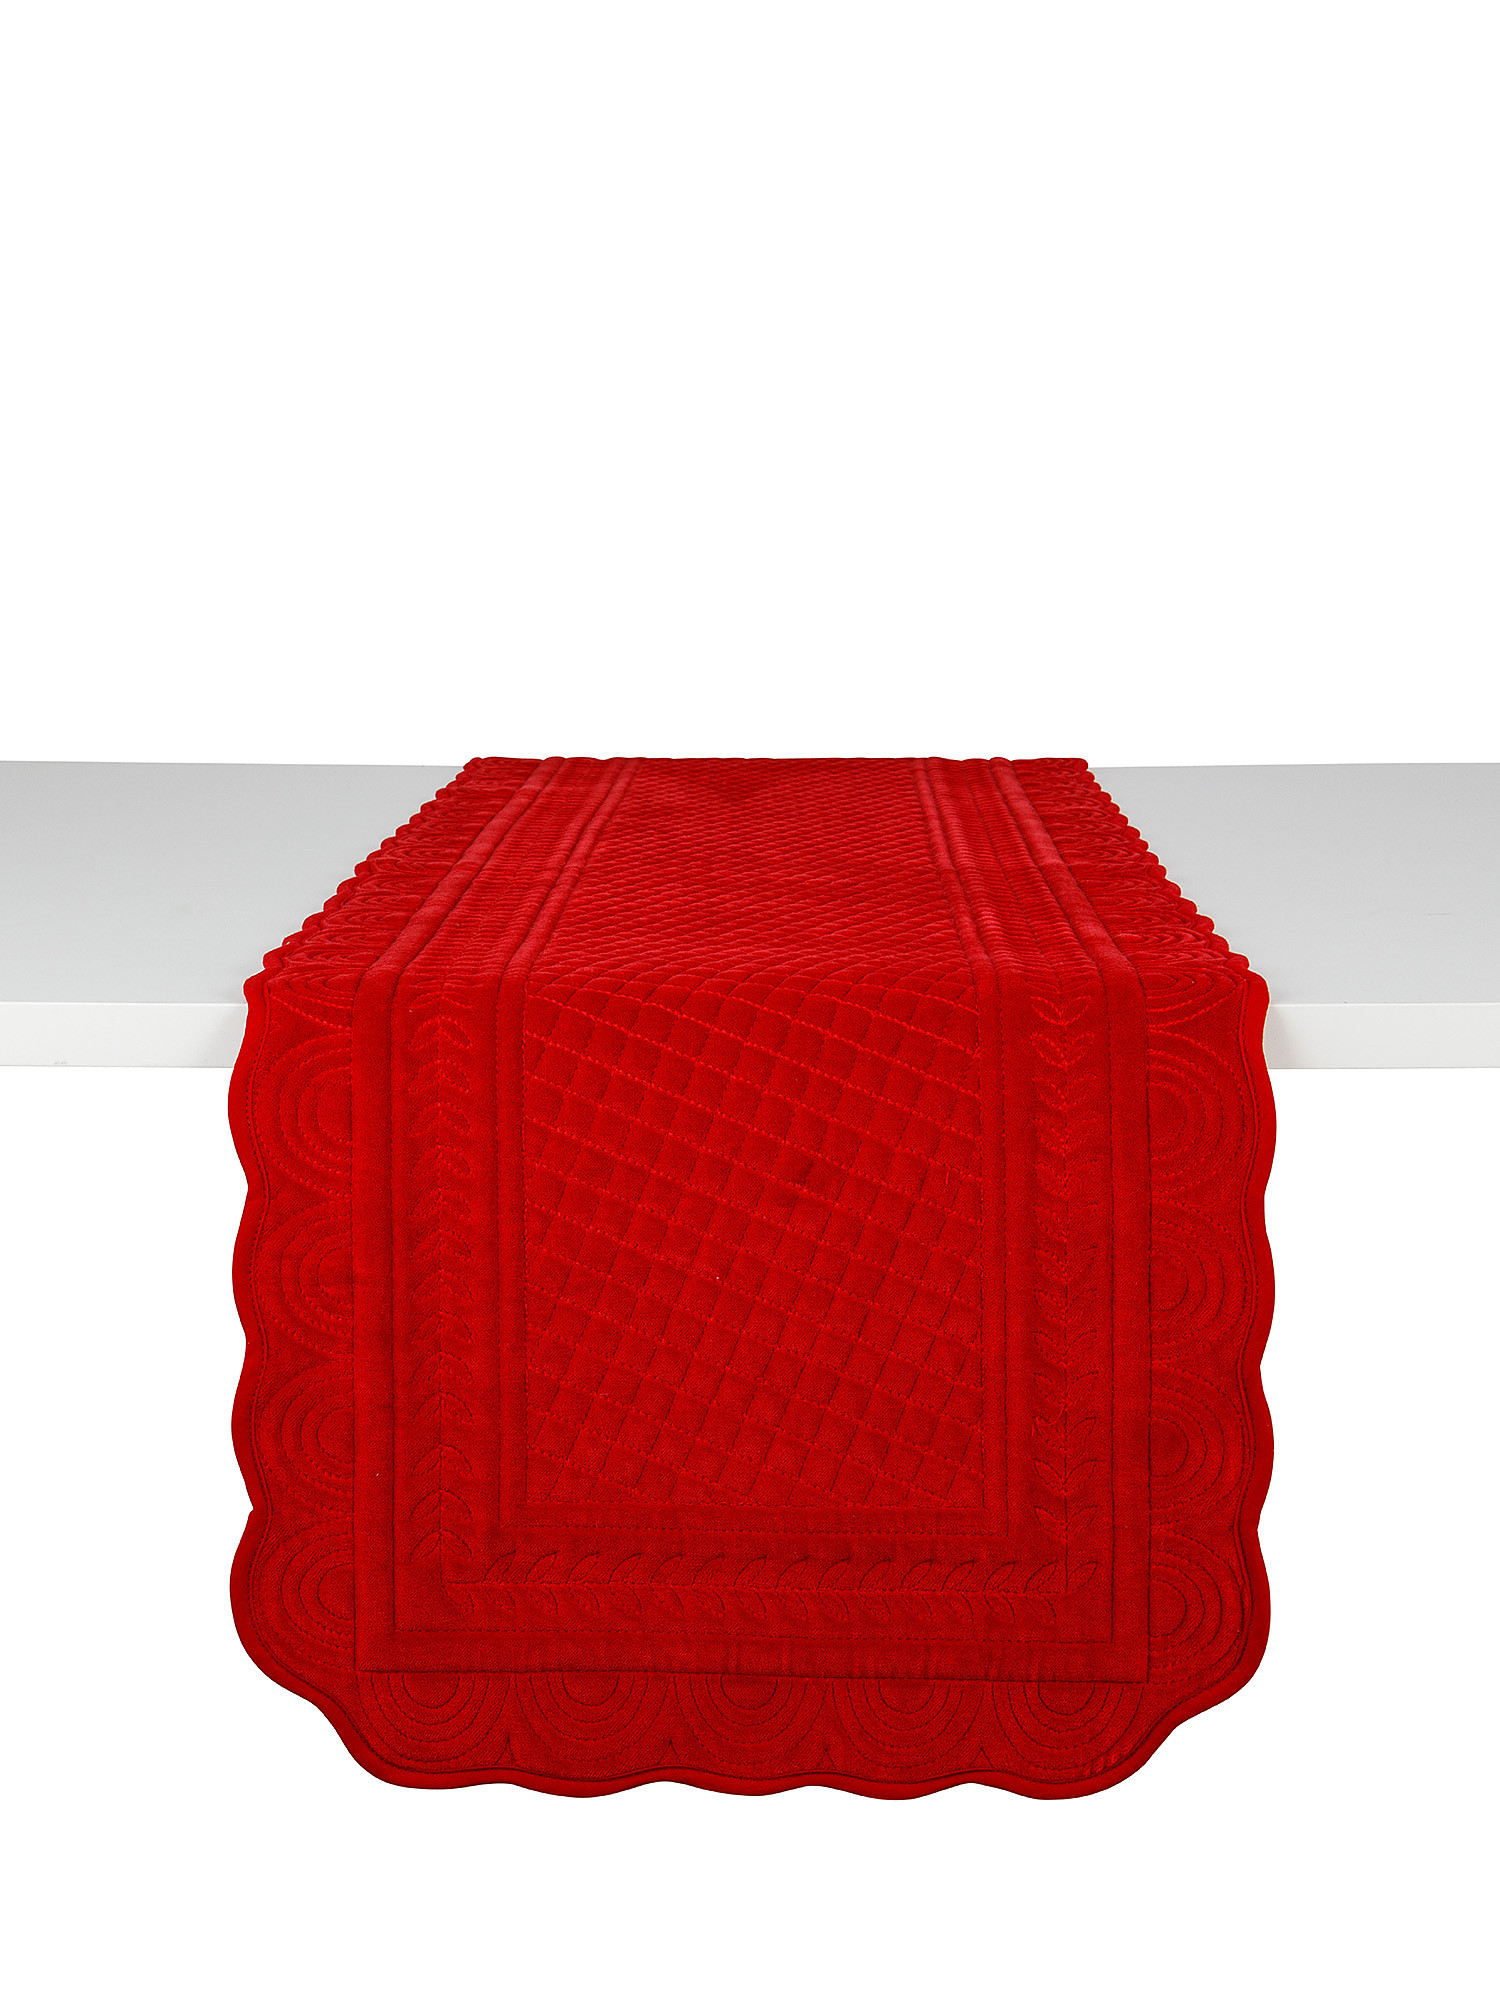 Tovaglietta trapuntata velluto di cotone tinta unita, Rosso, large image number 0